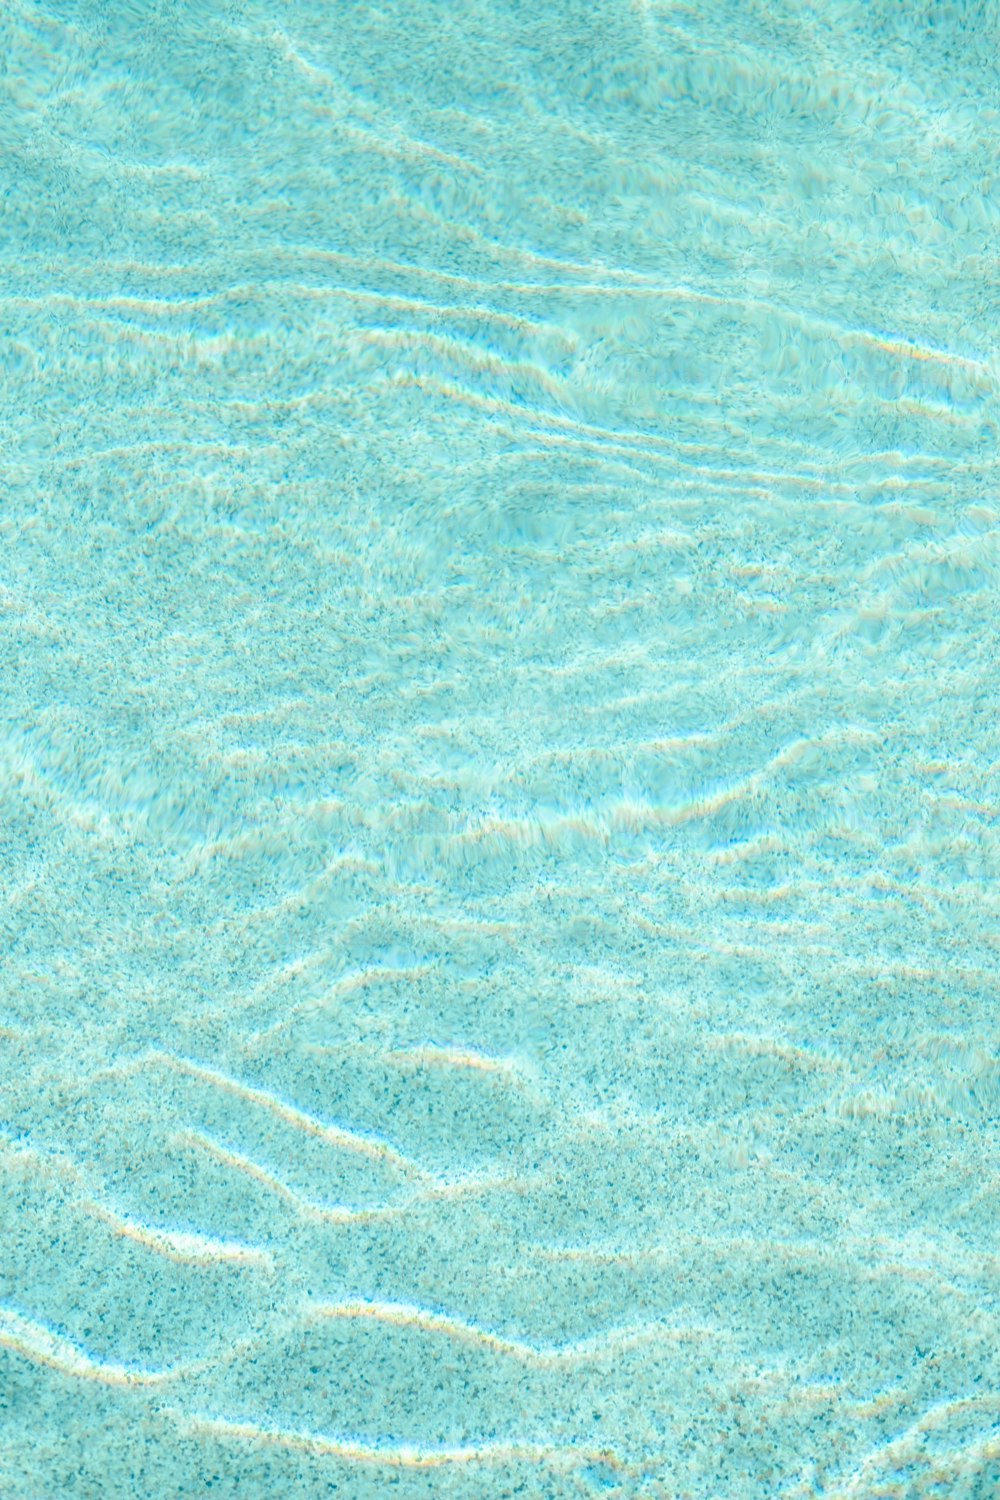 Una piscina blu con acqua limpida e increspature